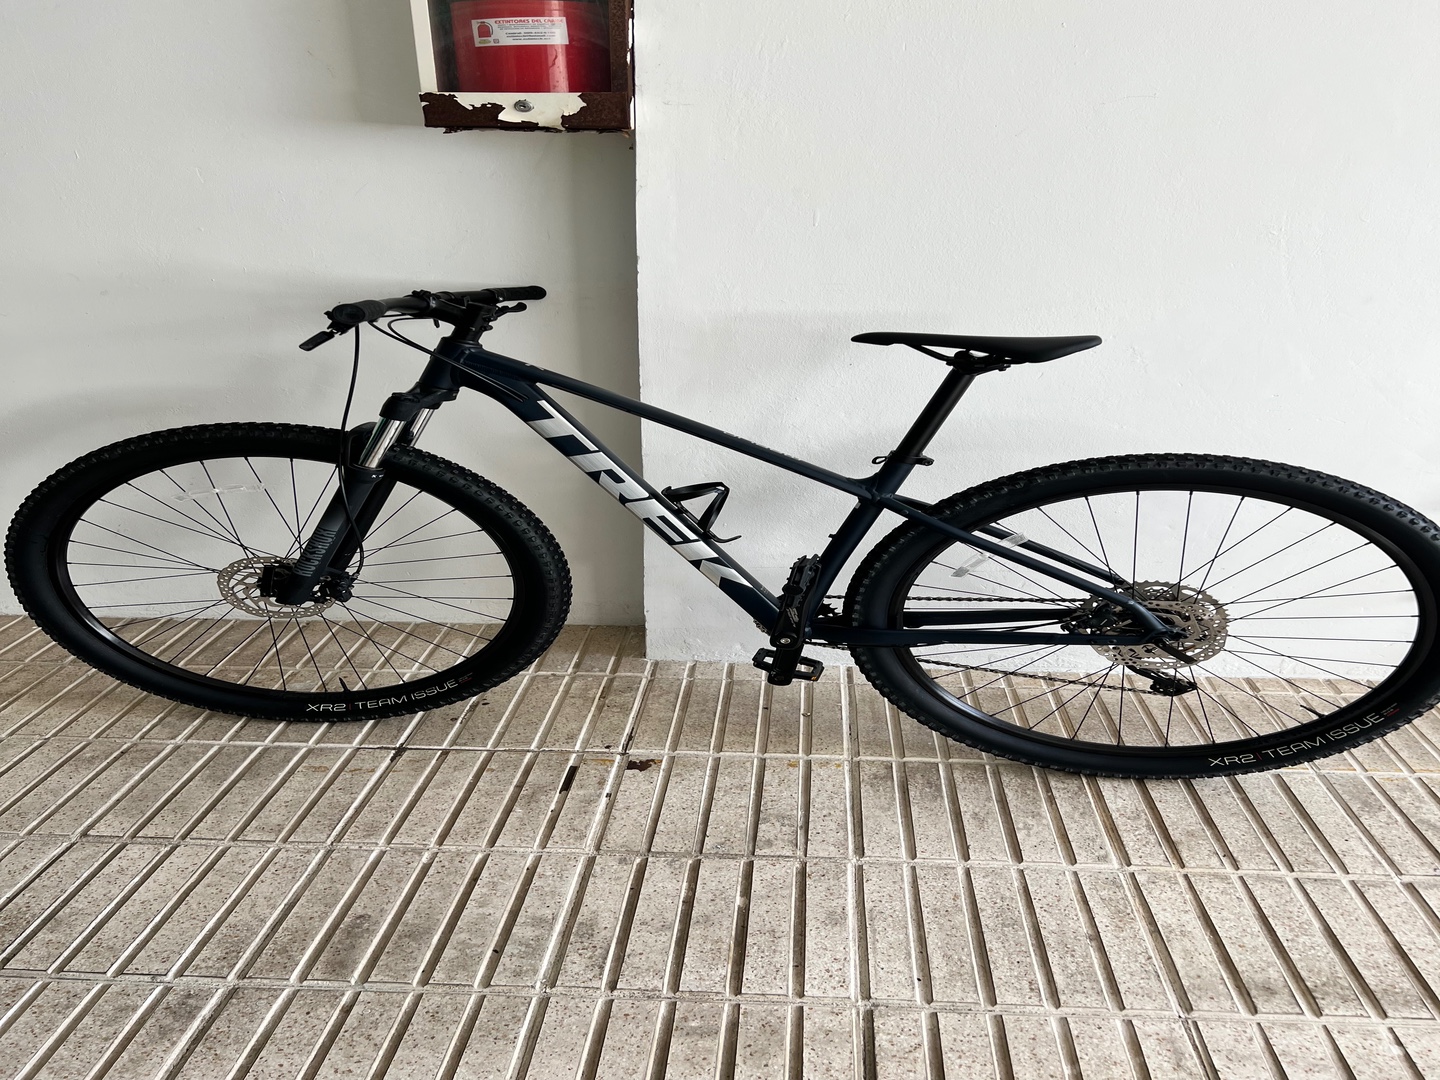 bicicletas y accesorios - Bicicleta Marlin 7 2021 comprada en Bikes 4 You, poco uso unico dueño.